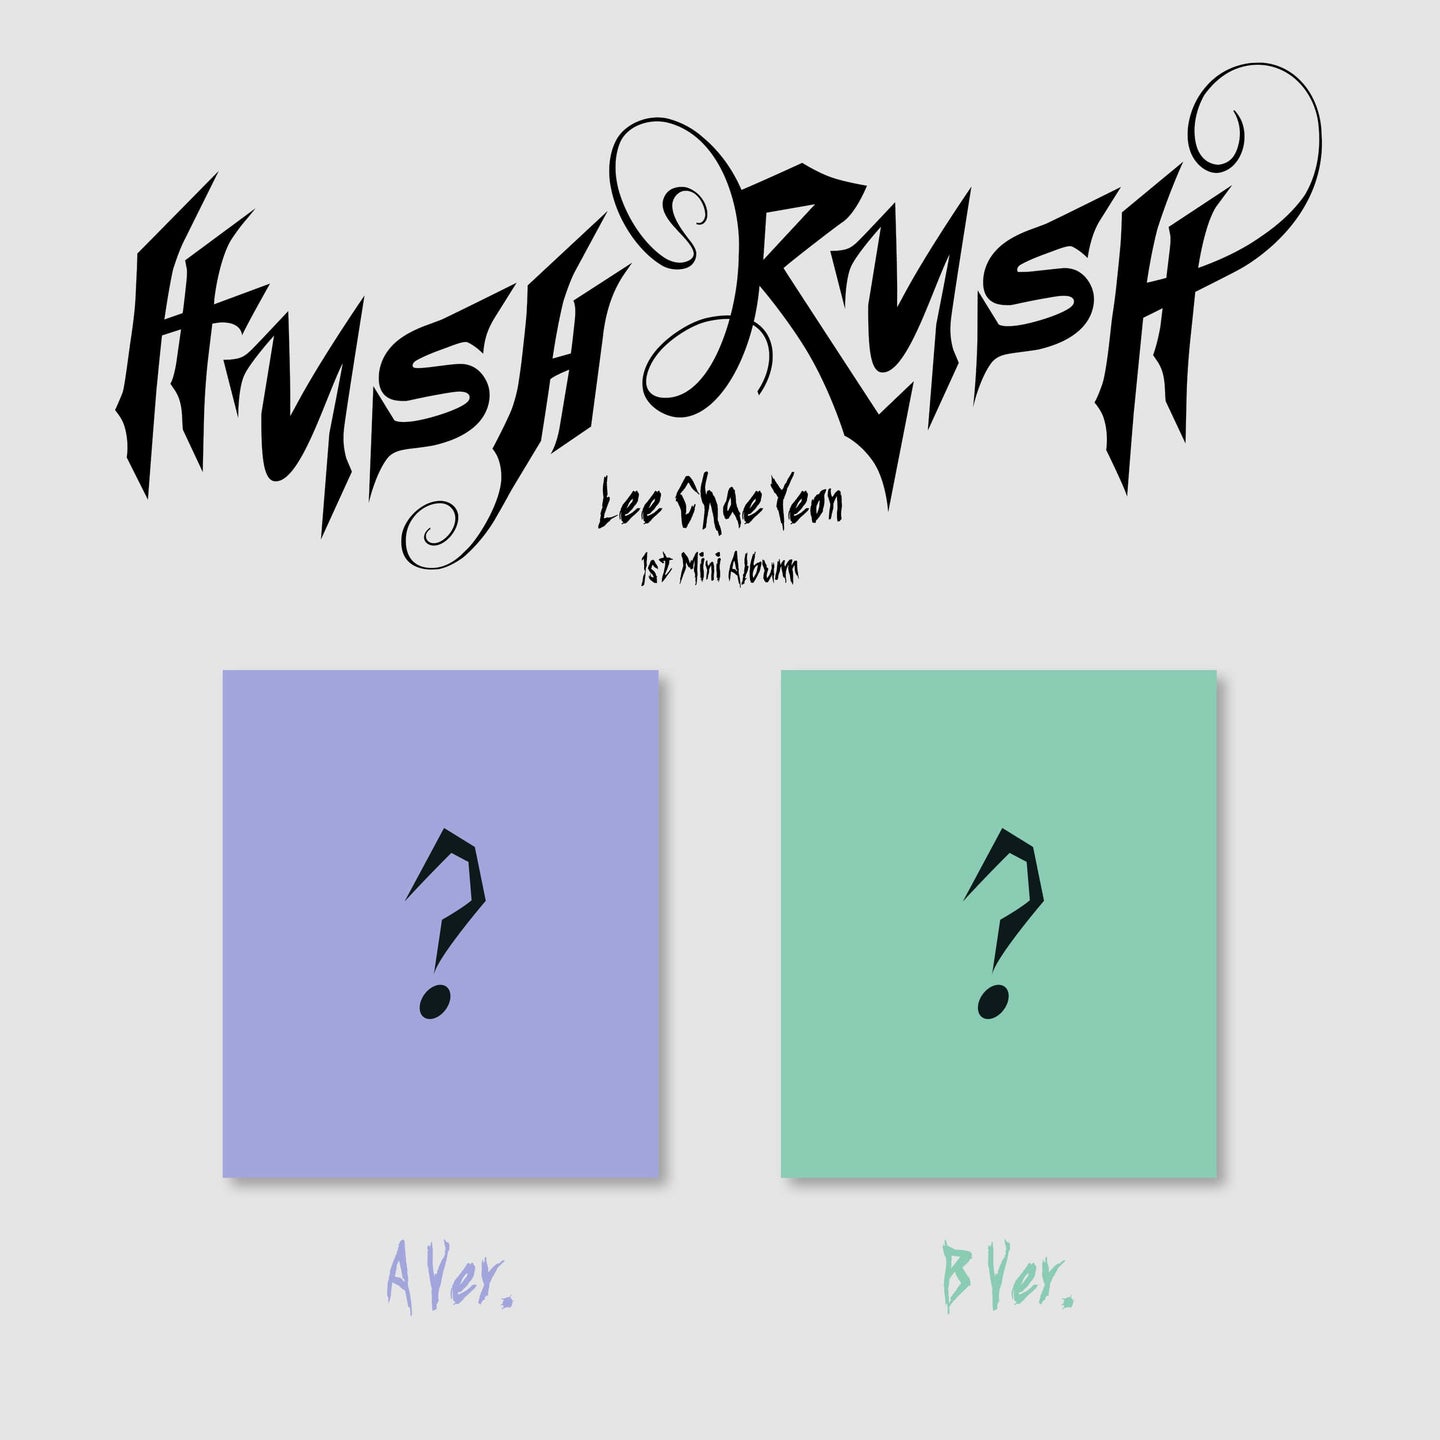 LEE CHAE YEON Mini Album Vol. 1 - HUSH RUSH (Random)